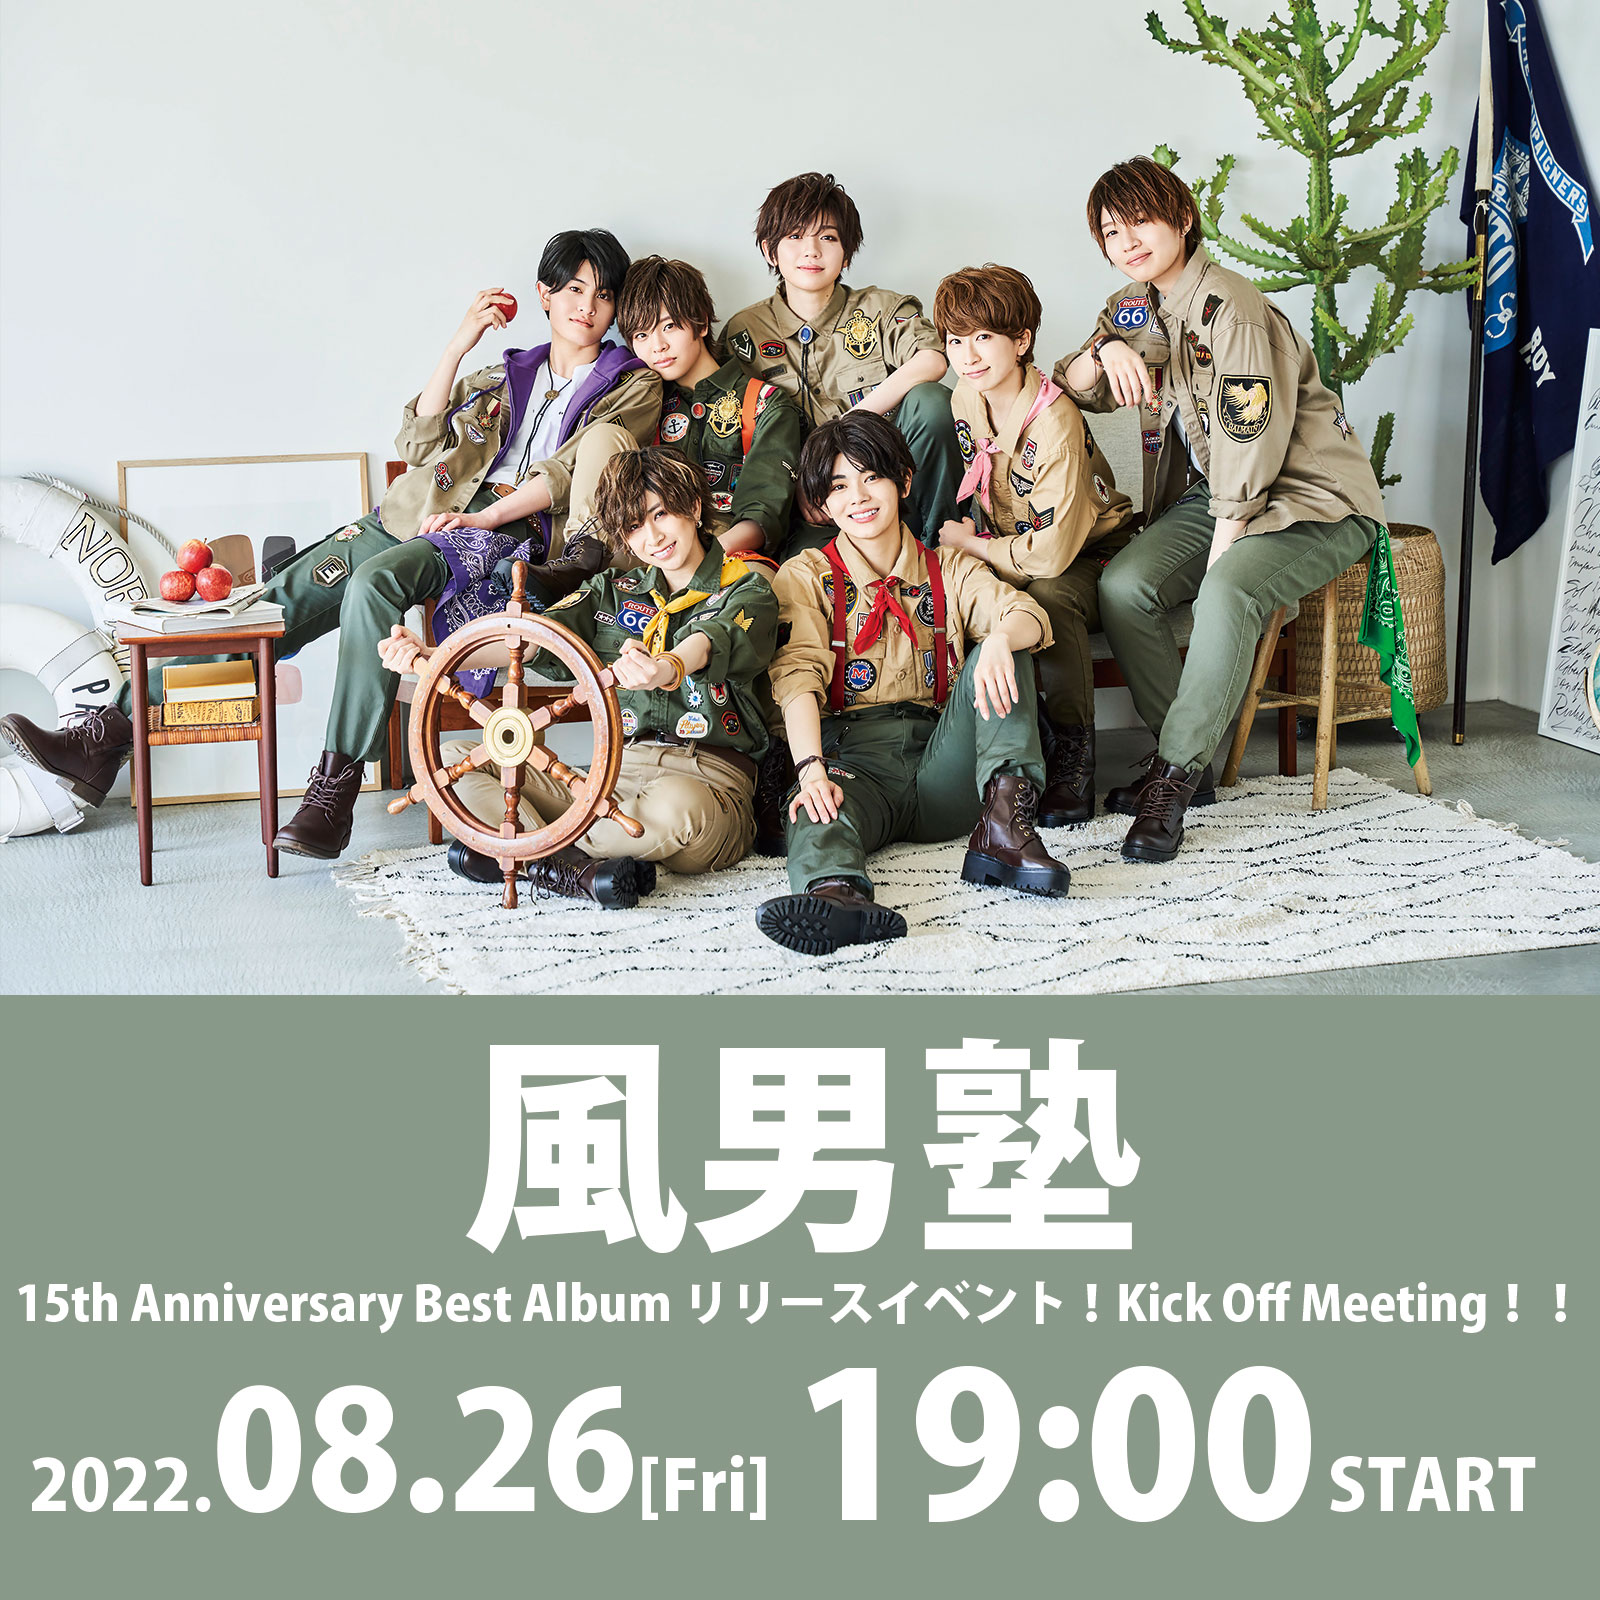 8/26(金)風男塾 15th Anniversary Best Album リリースイベント！Kick Off Meeting !!